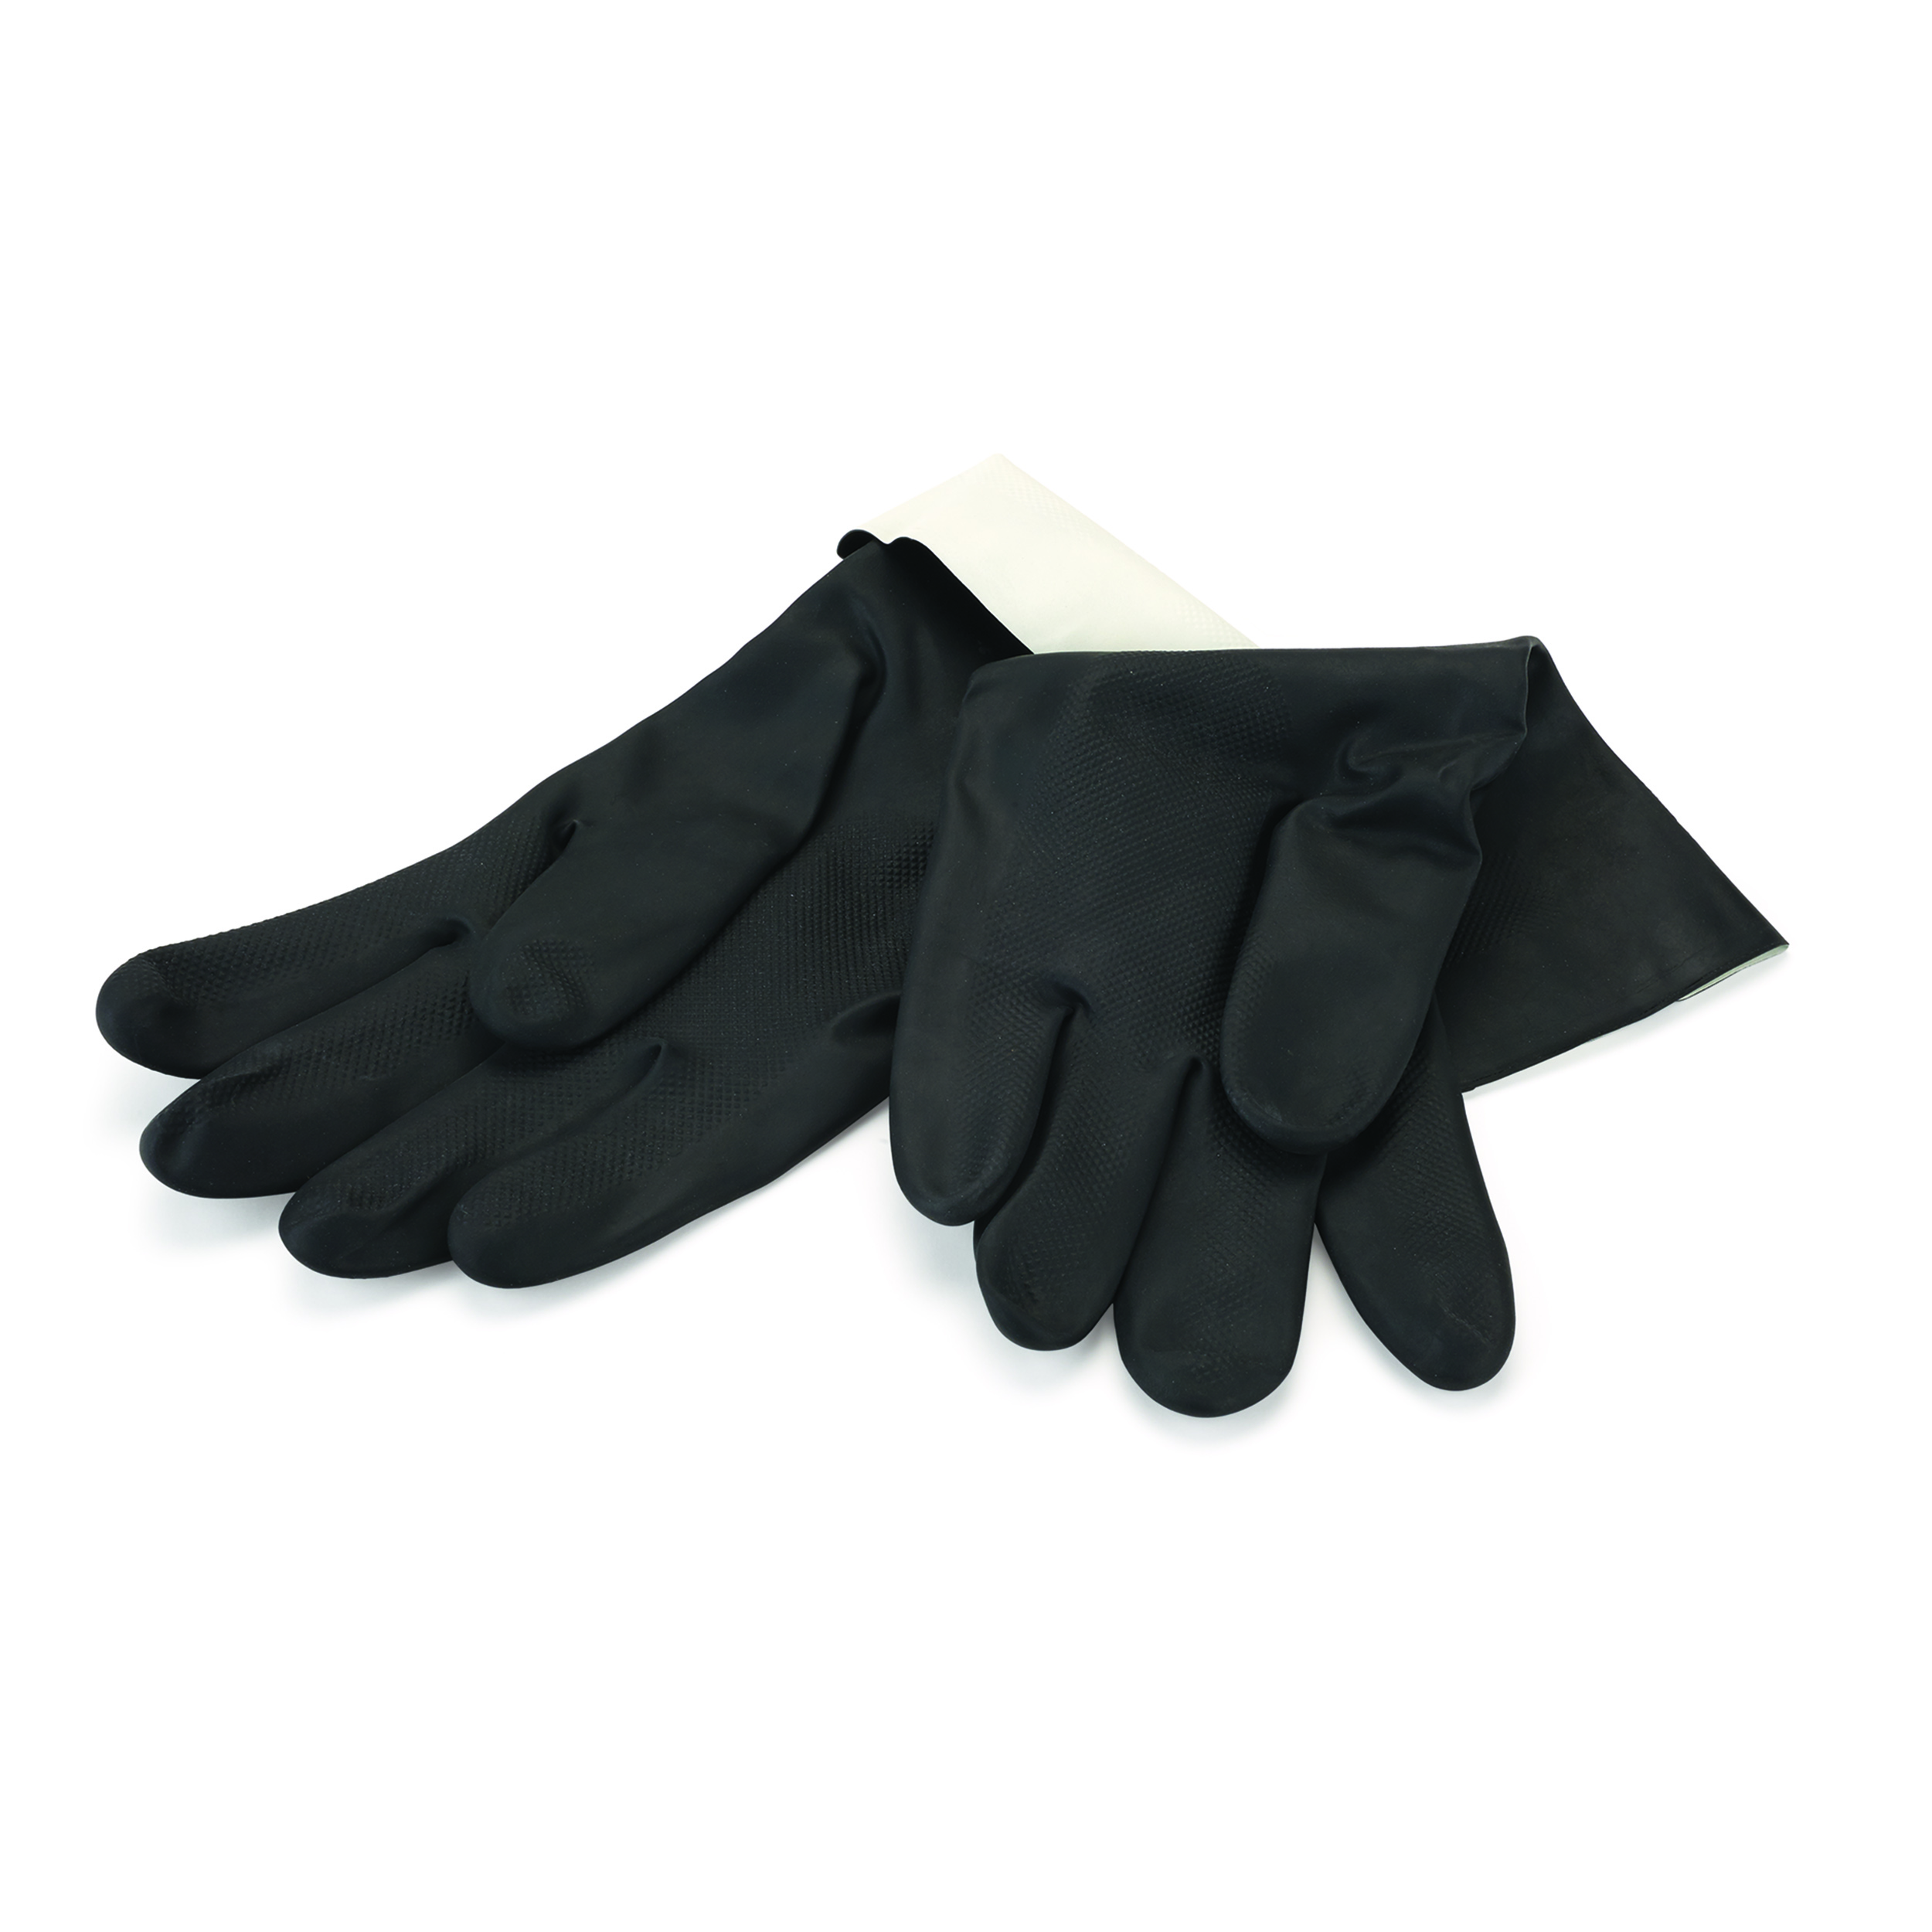 Deluxe Neoprene 12in Large Gloves, Pair